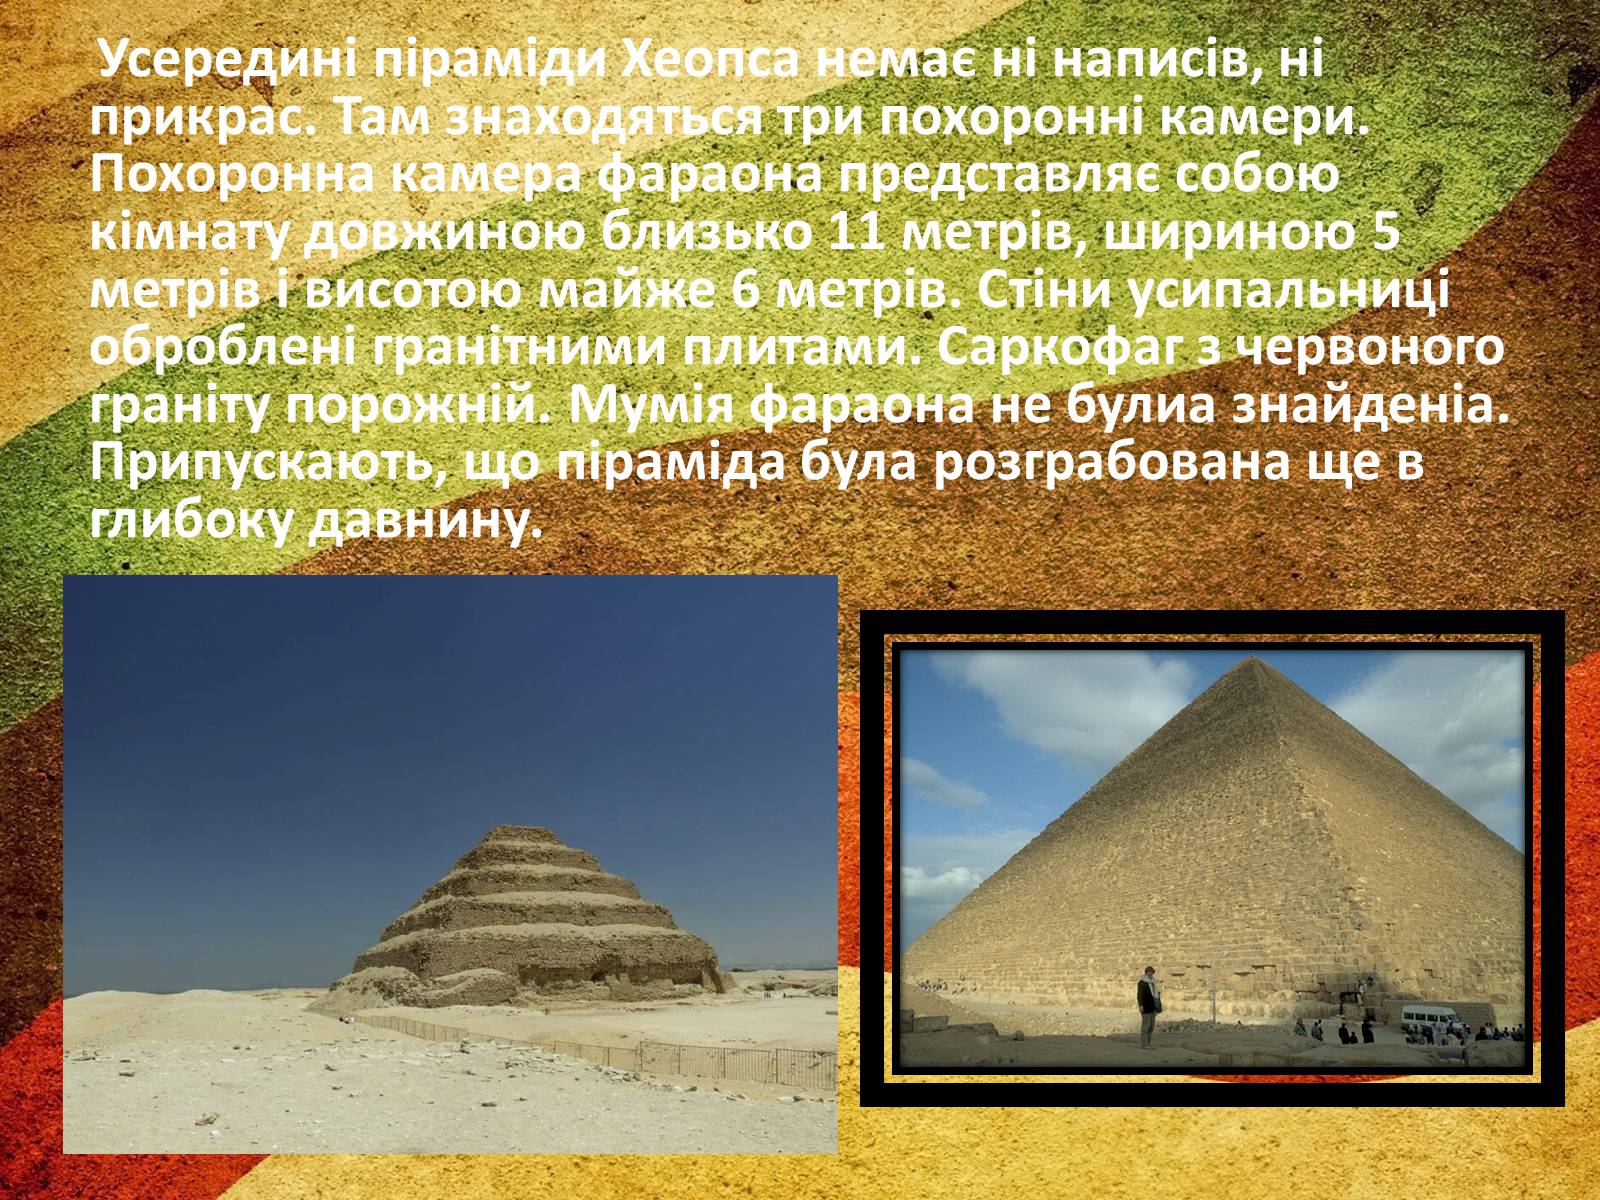 Два факта о пирамиде хеопса. Интересные факты о пирамидах. Пирамида для презентации. Пирамида на английском. Презентация про пирамиды в обычной жизни.